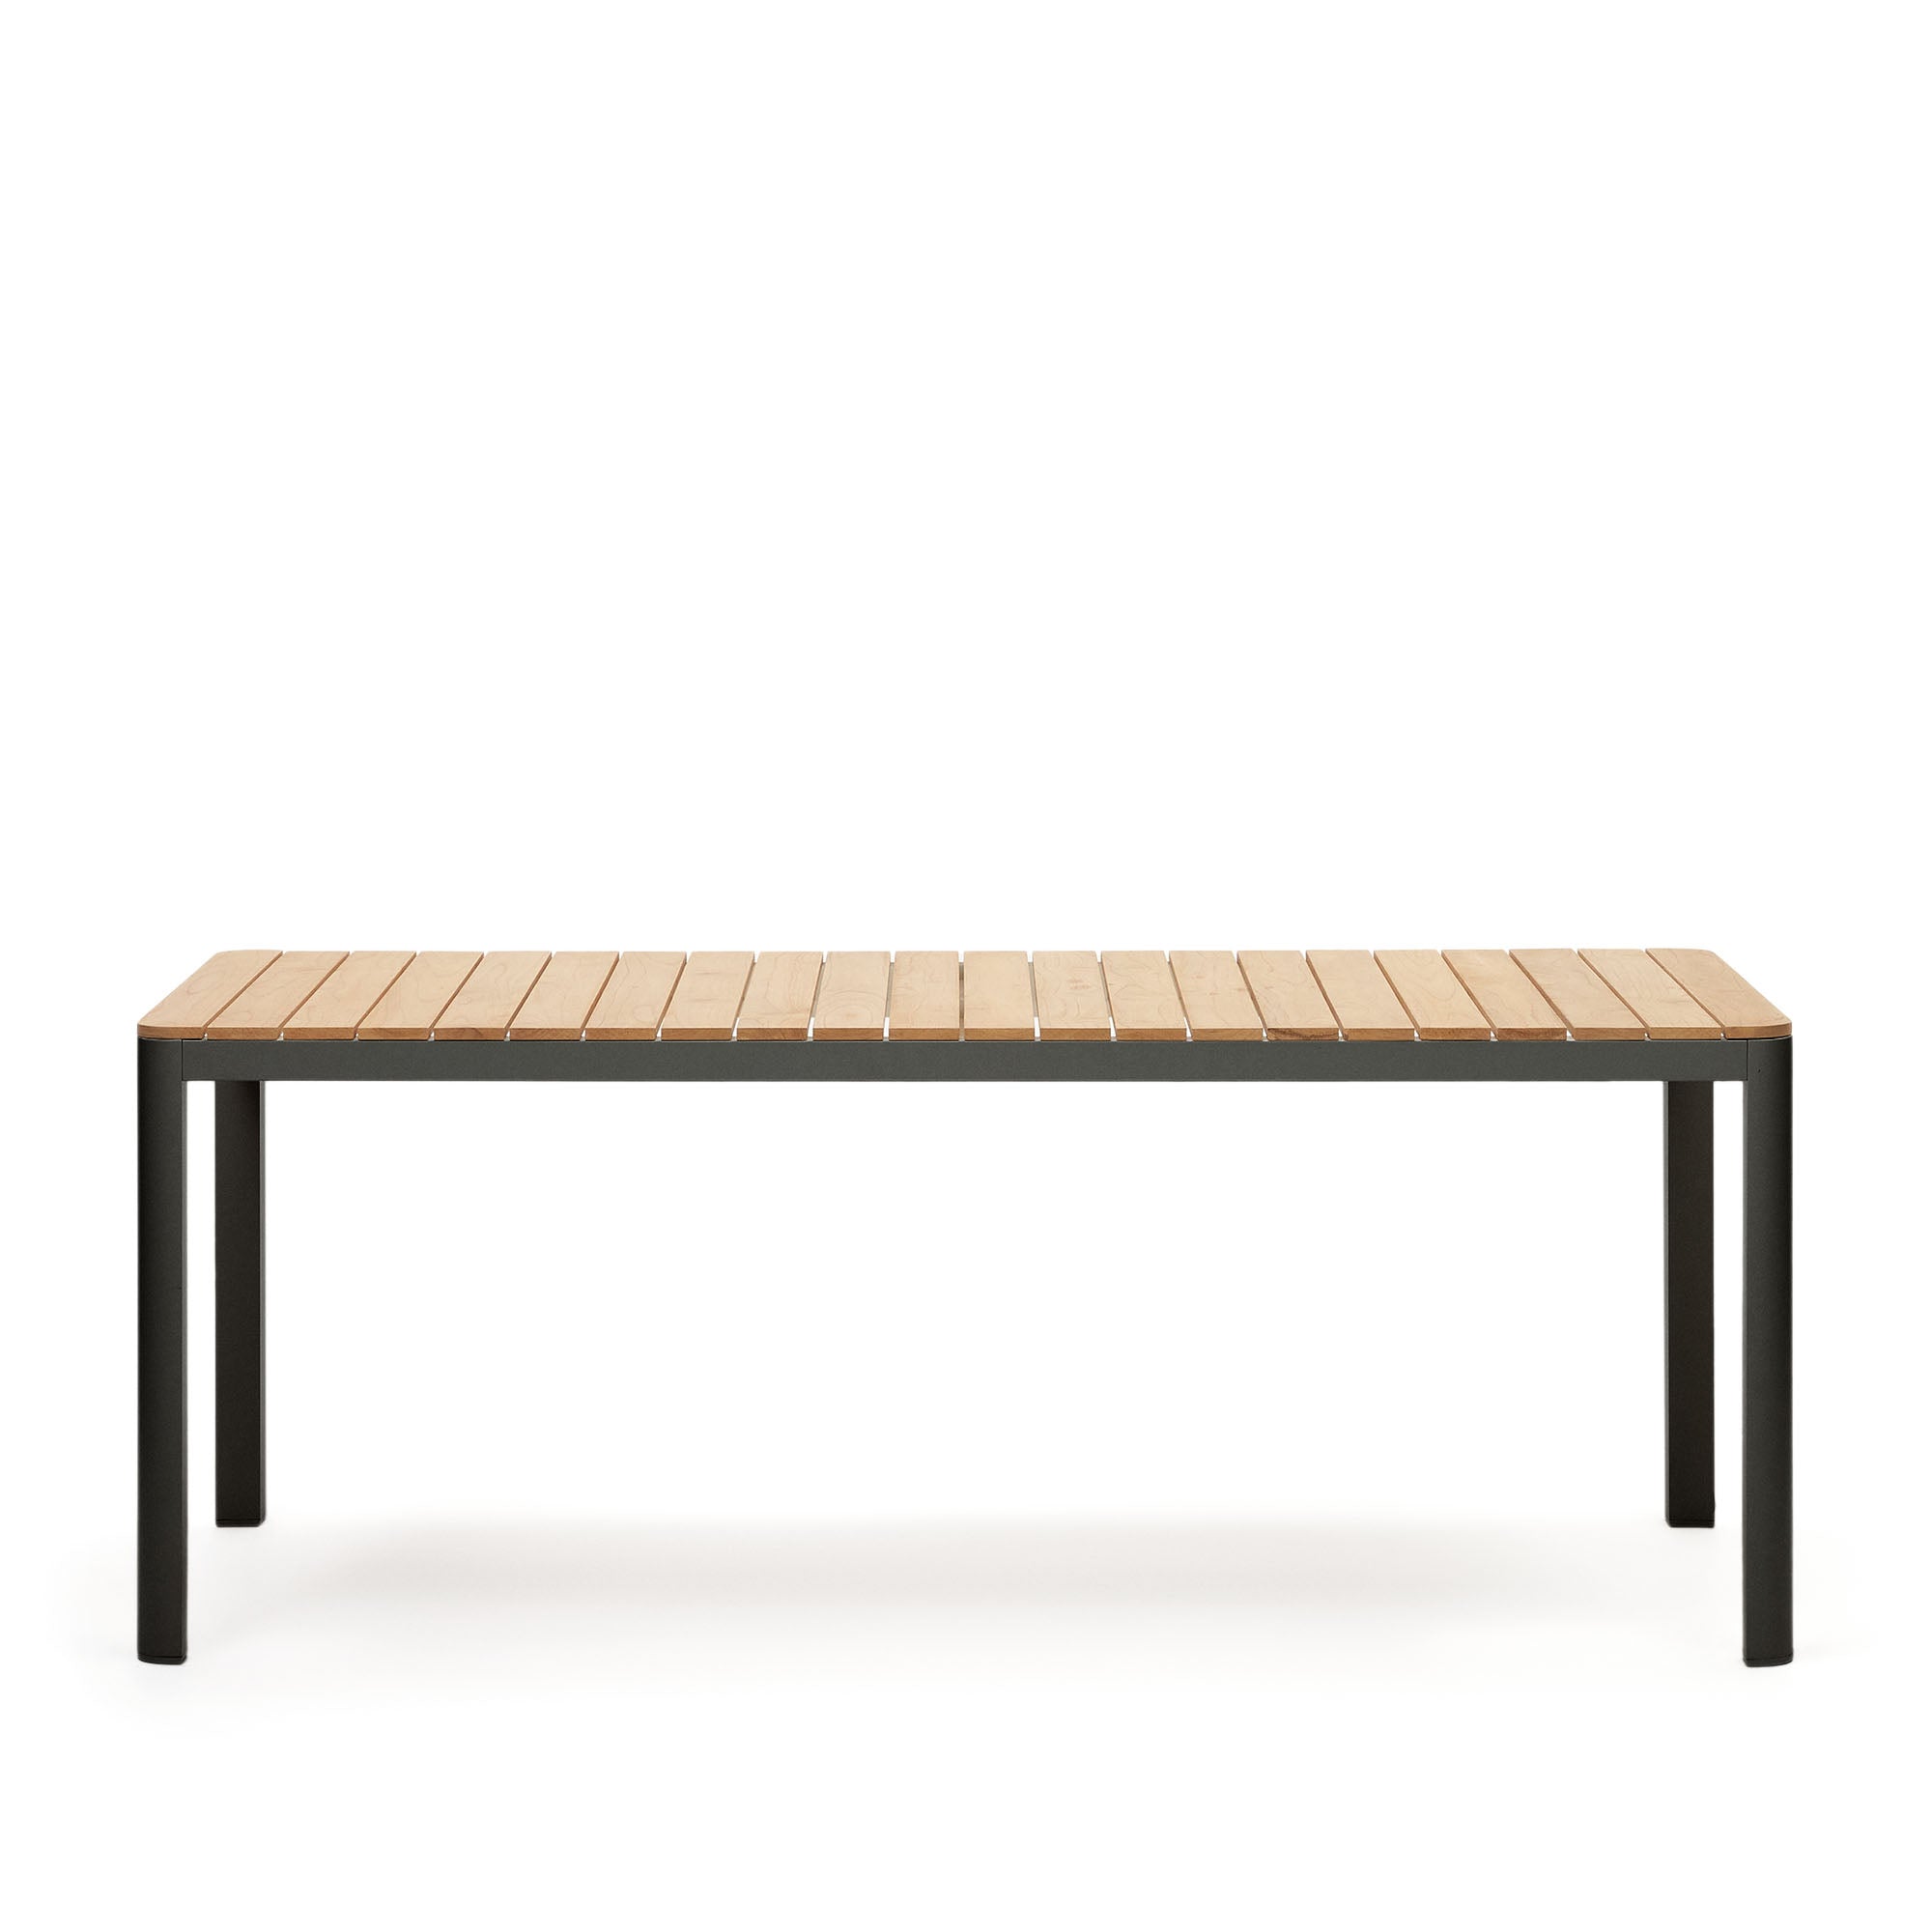 Bona alumínium és tömör teakfa asztal, 100%-ban kültéri használatra alkalmas, fekete kivitelben, 200 x 100 cm